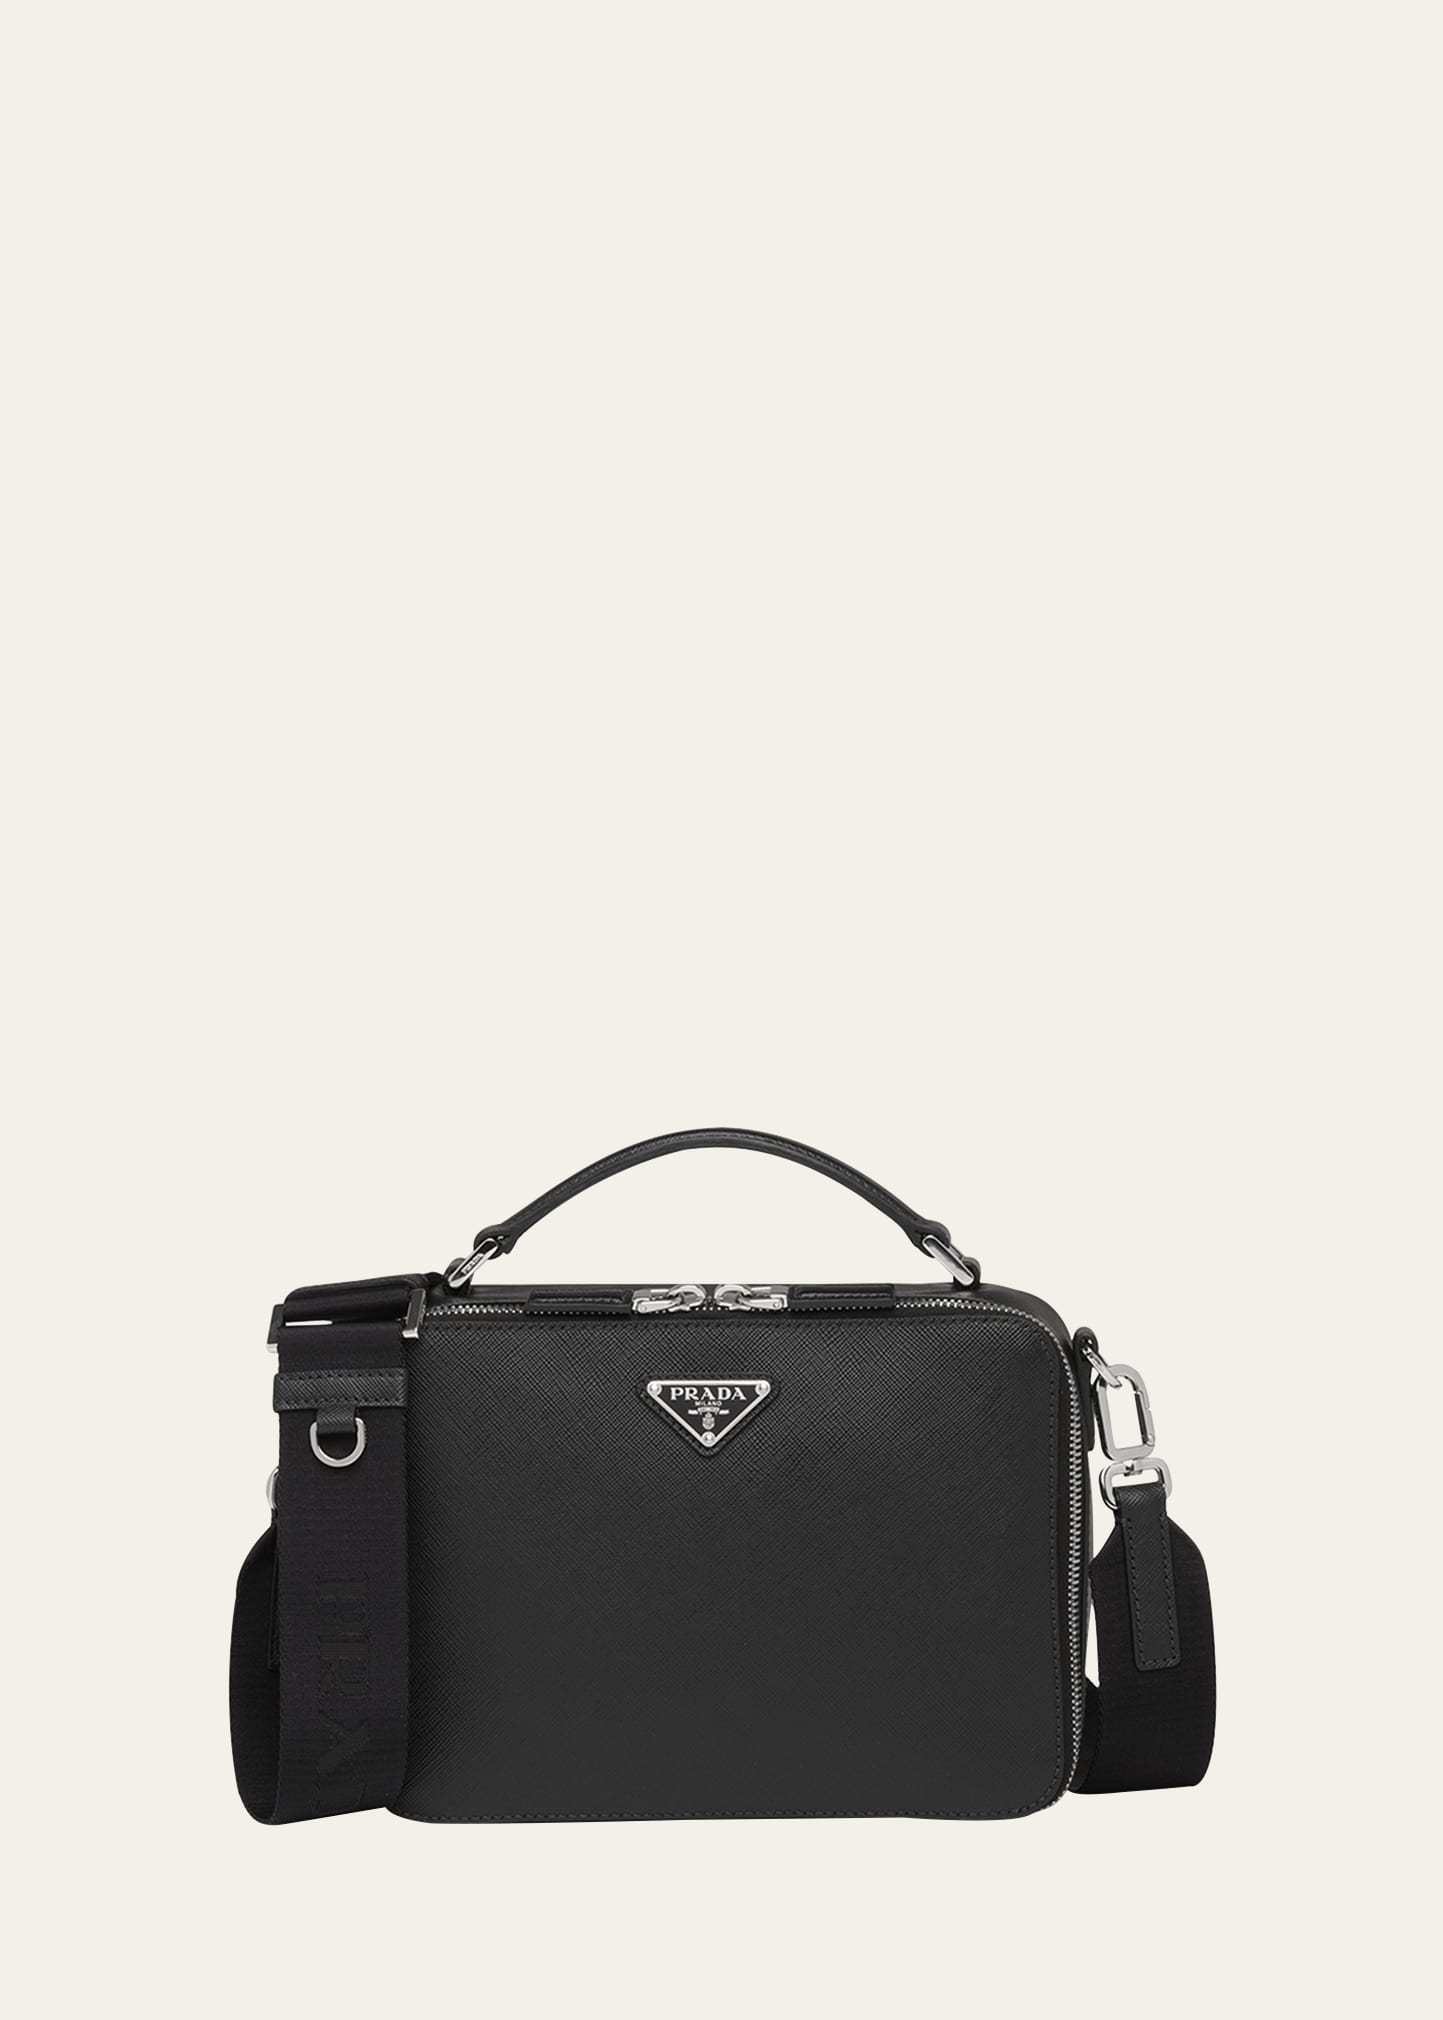 Prada Black Brique Saffiano Leather Bag, ModeSens